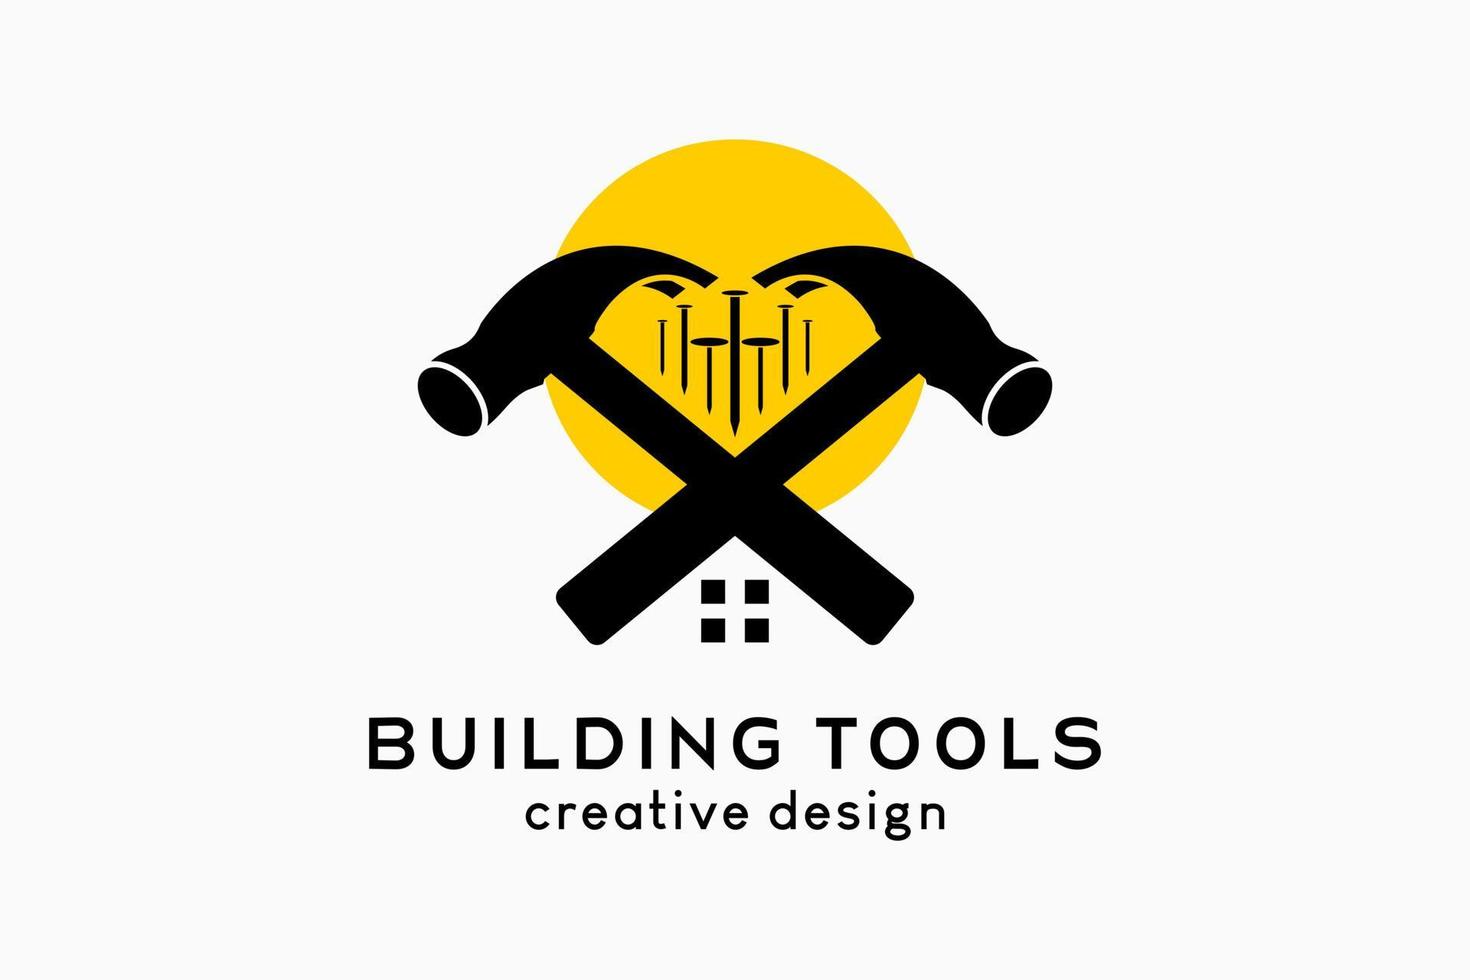 herramientas de construcción o diseño del logotipo de la tienda de construcción, silueta de un martillo con clavos en puntos vector